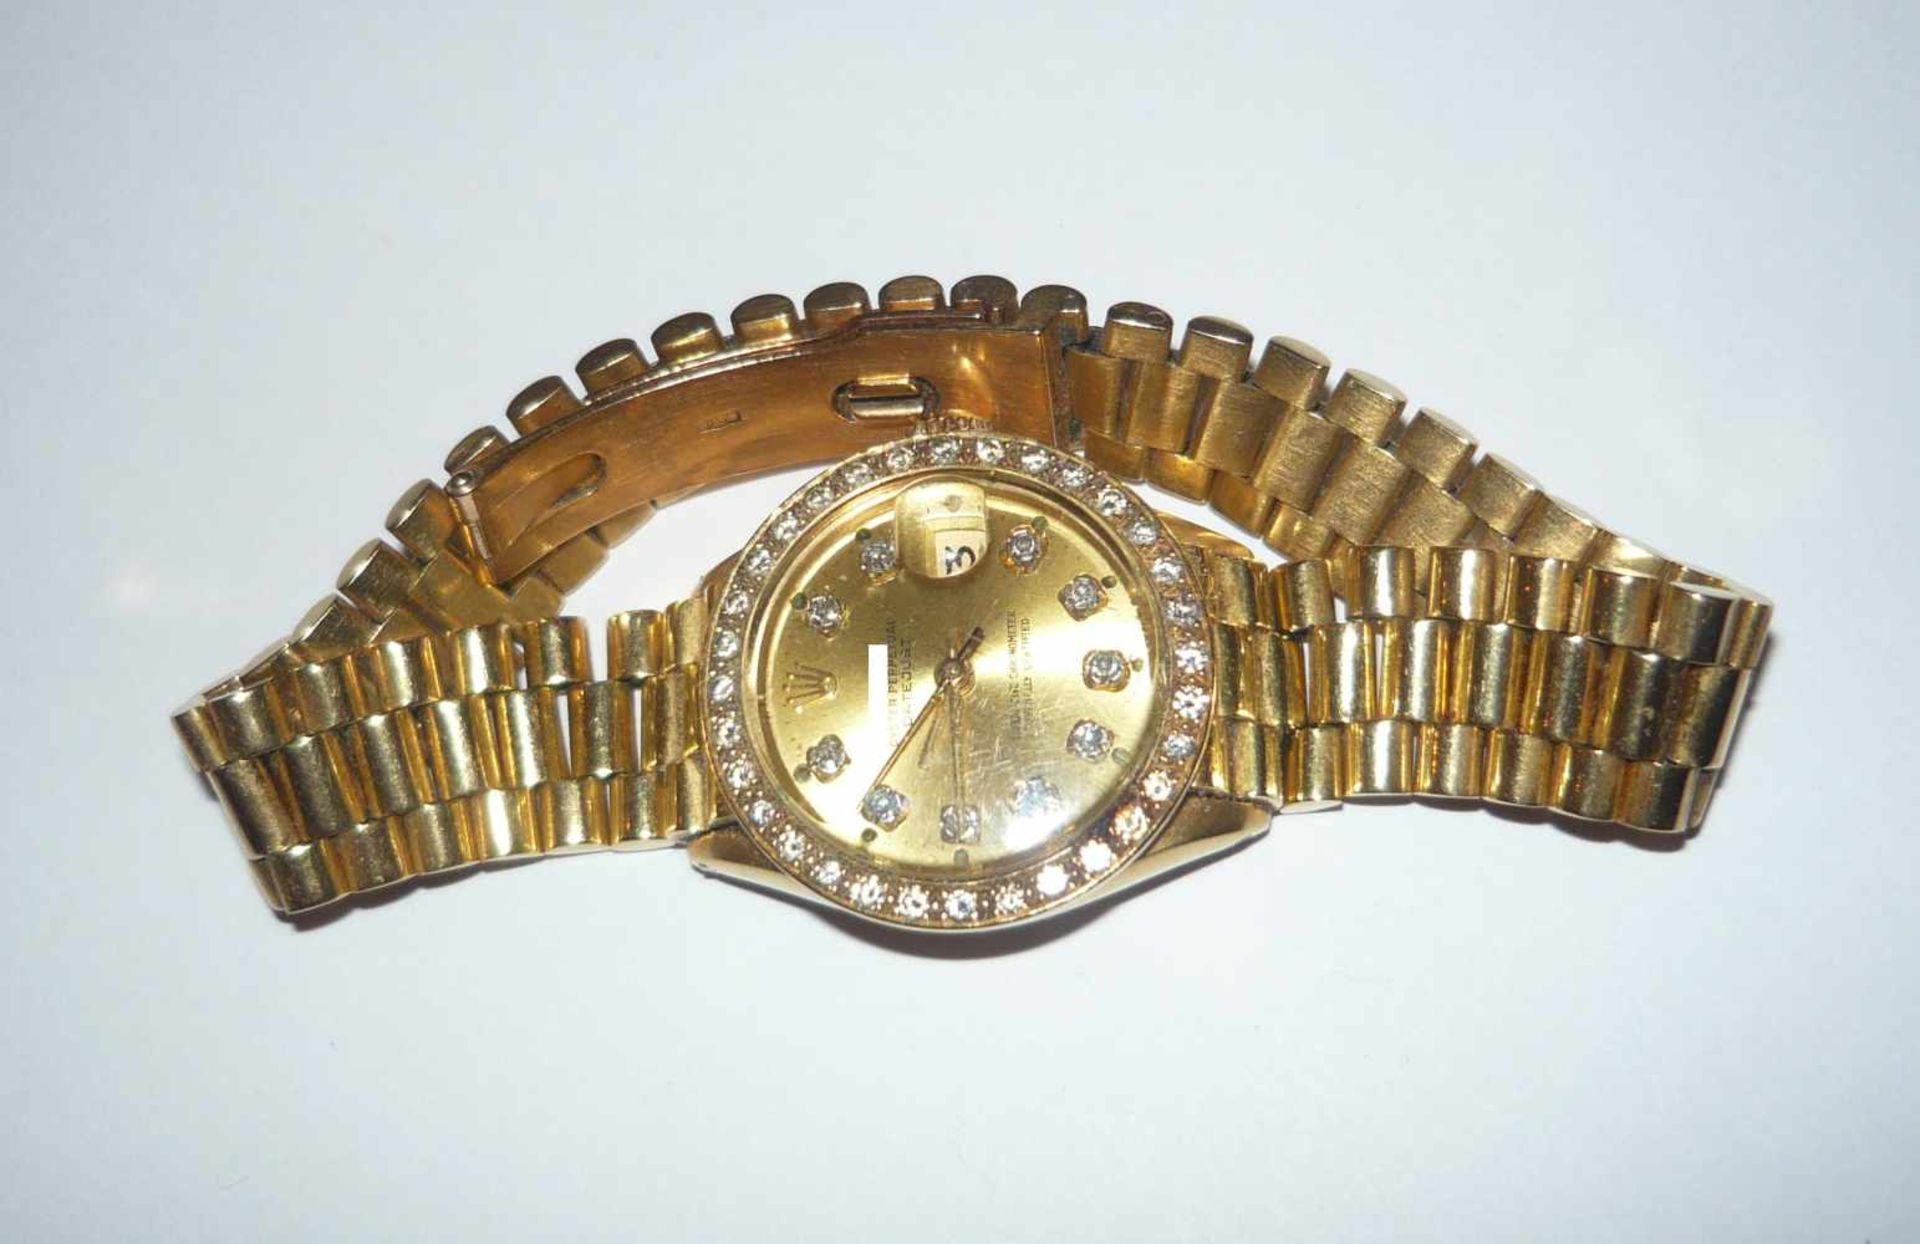 Vintage Brillantuhr. 750er GG (18K). Ziffernblatt im Rolex-Stil. Werk läuft gut, jedoch ohne